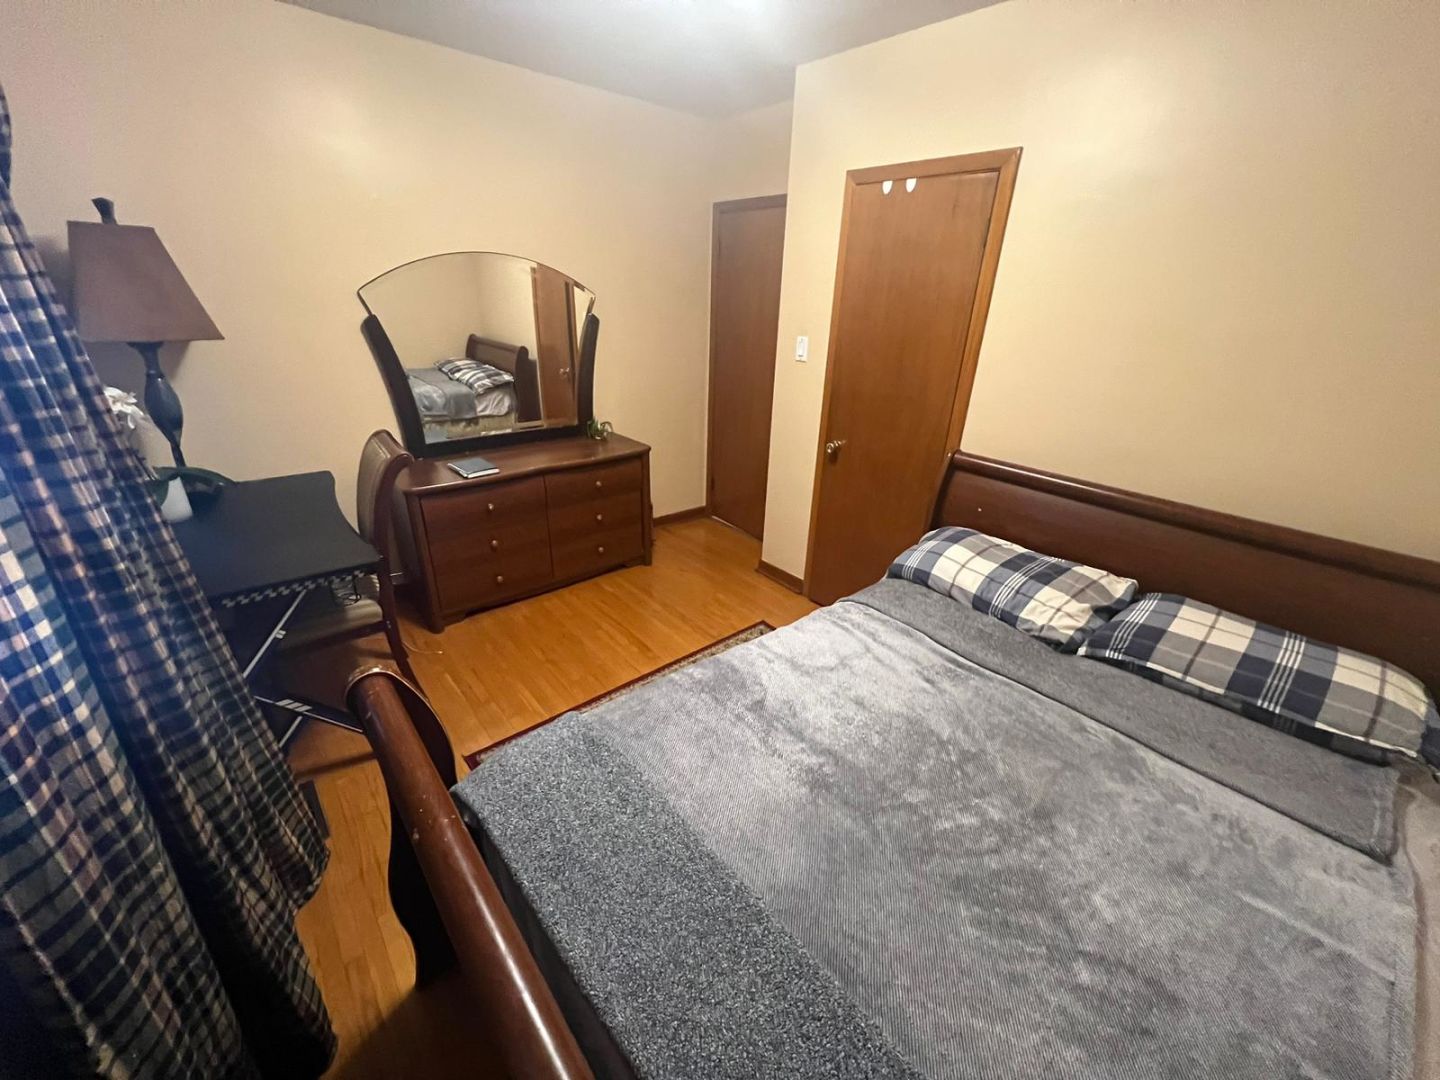 Elite Homestay Room - Monclova Rd, Toronto room for rent 44